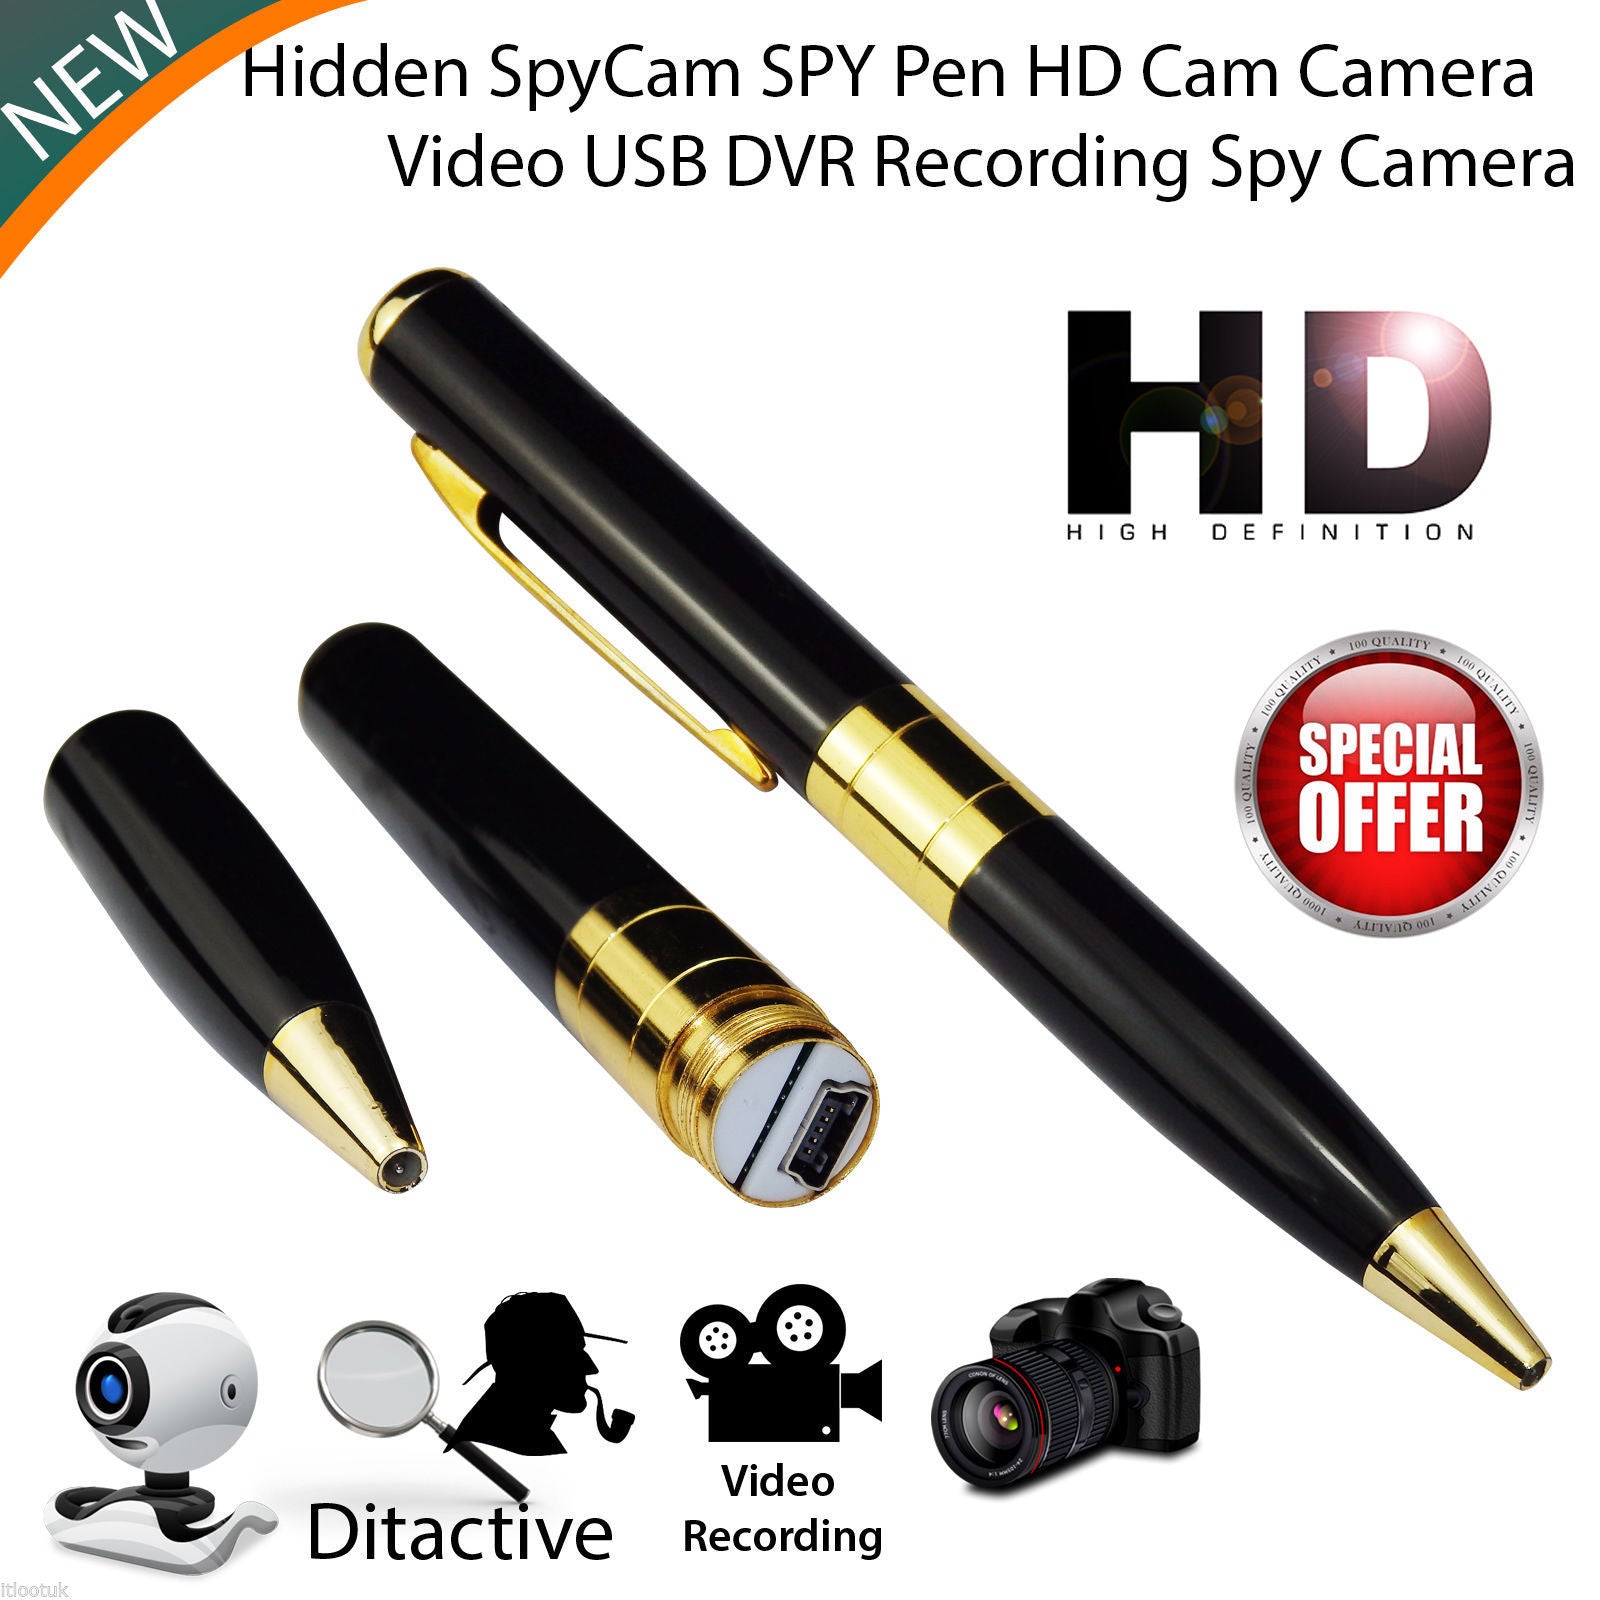 New Mini SPY Pen HD Cam Hidden Camera 32GB Video USB DVR Recording